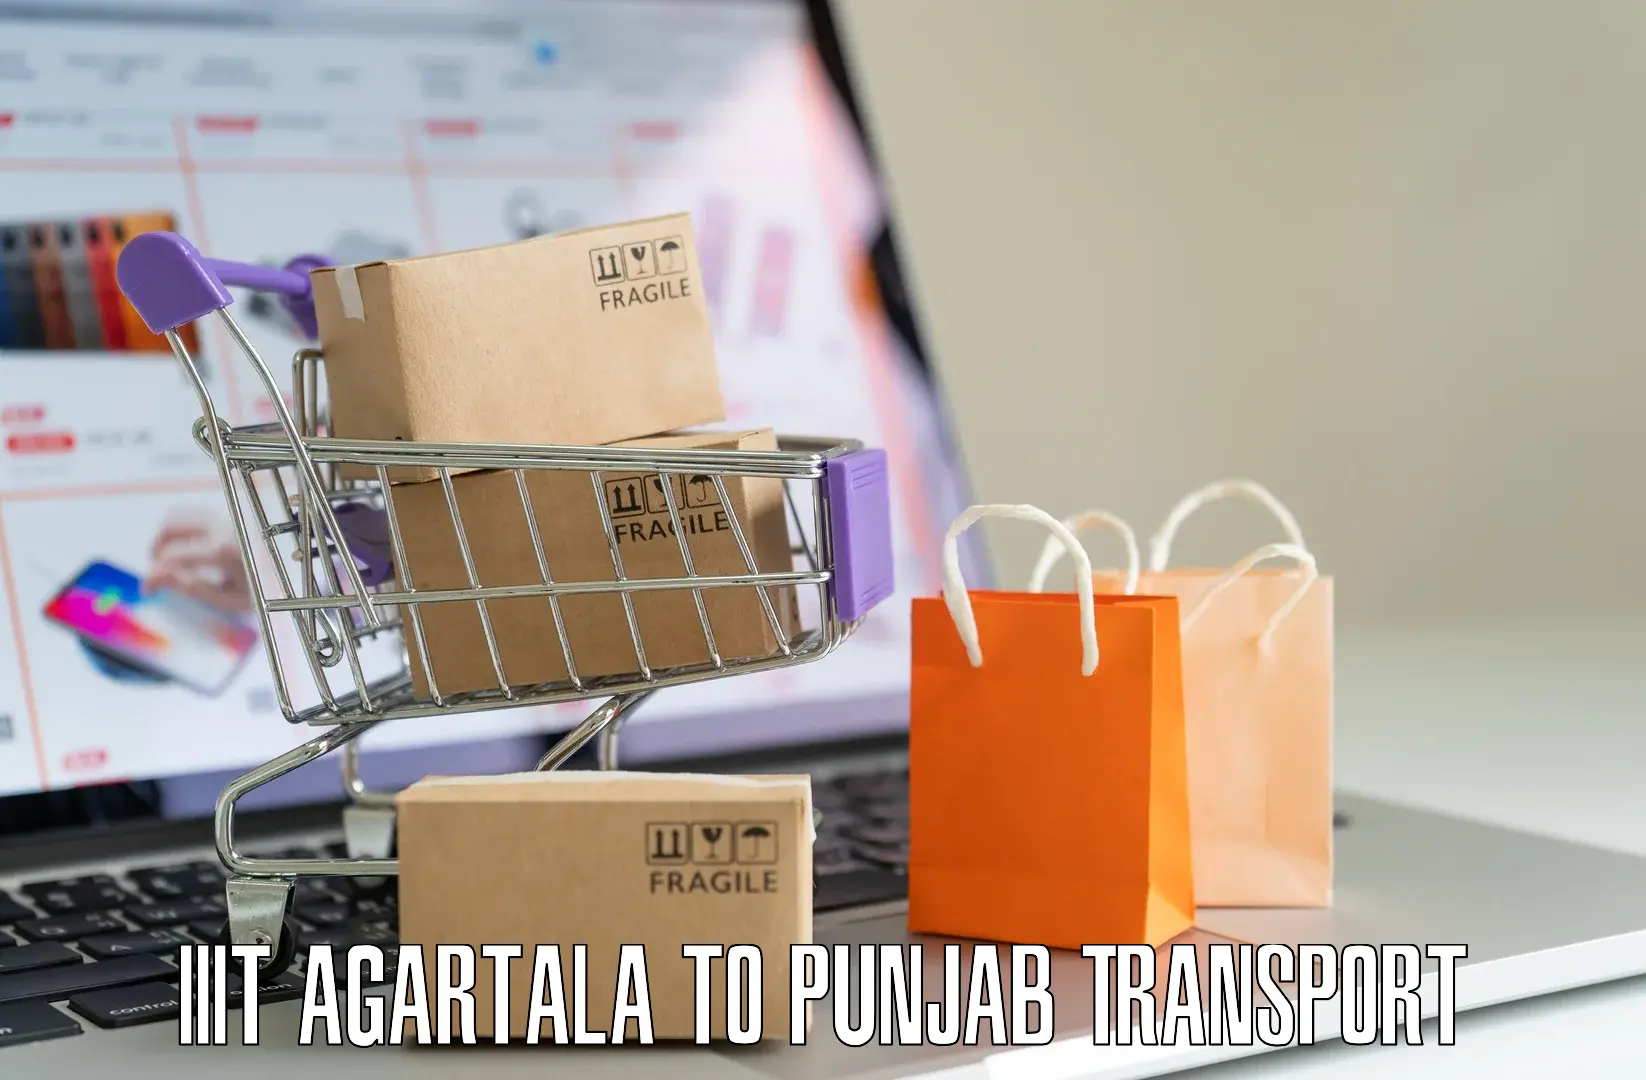 Furniture transport service IIIT Agartala to Beas